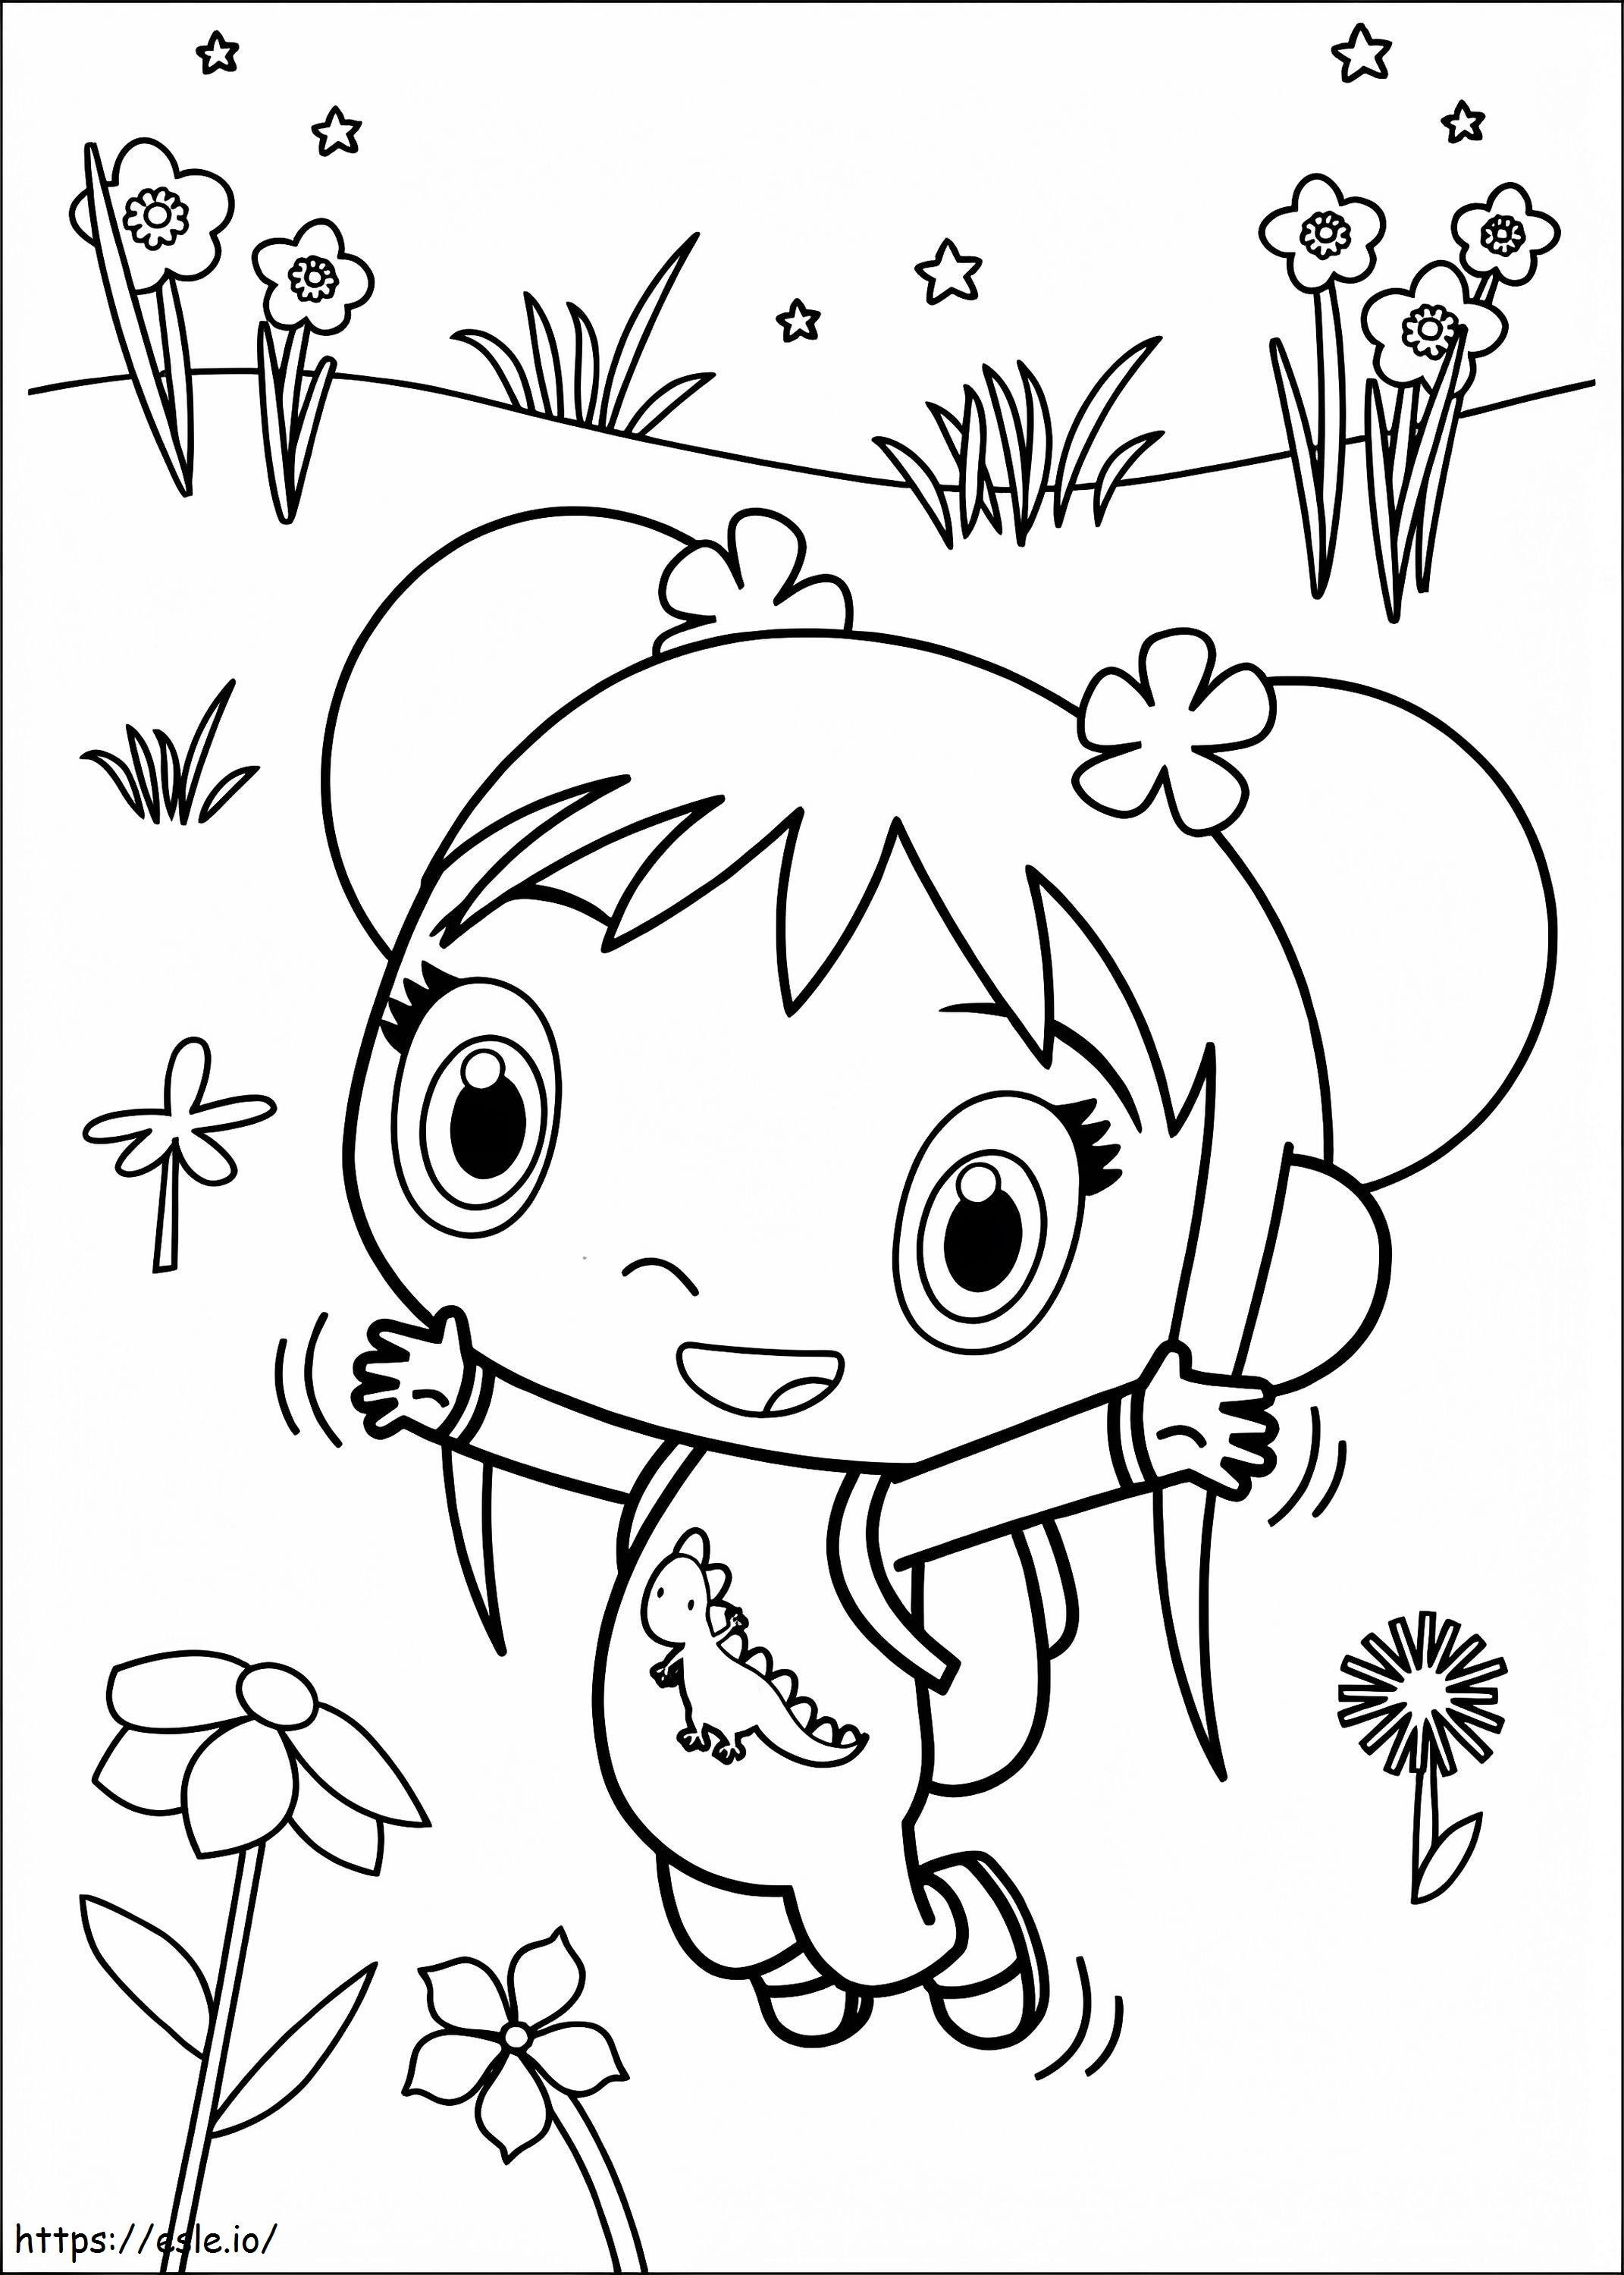 Happy Kai Lan coloring page